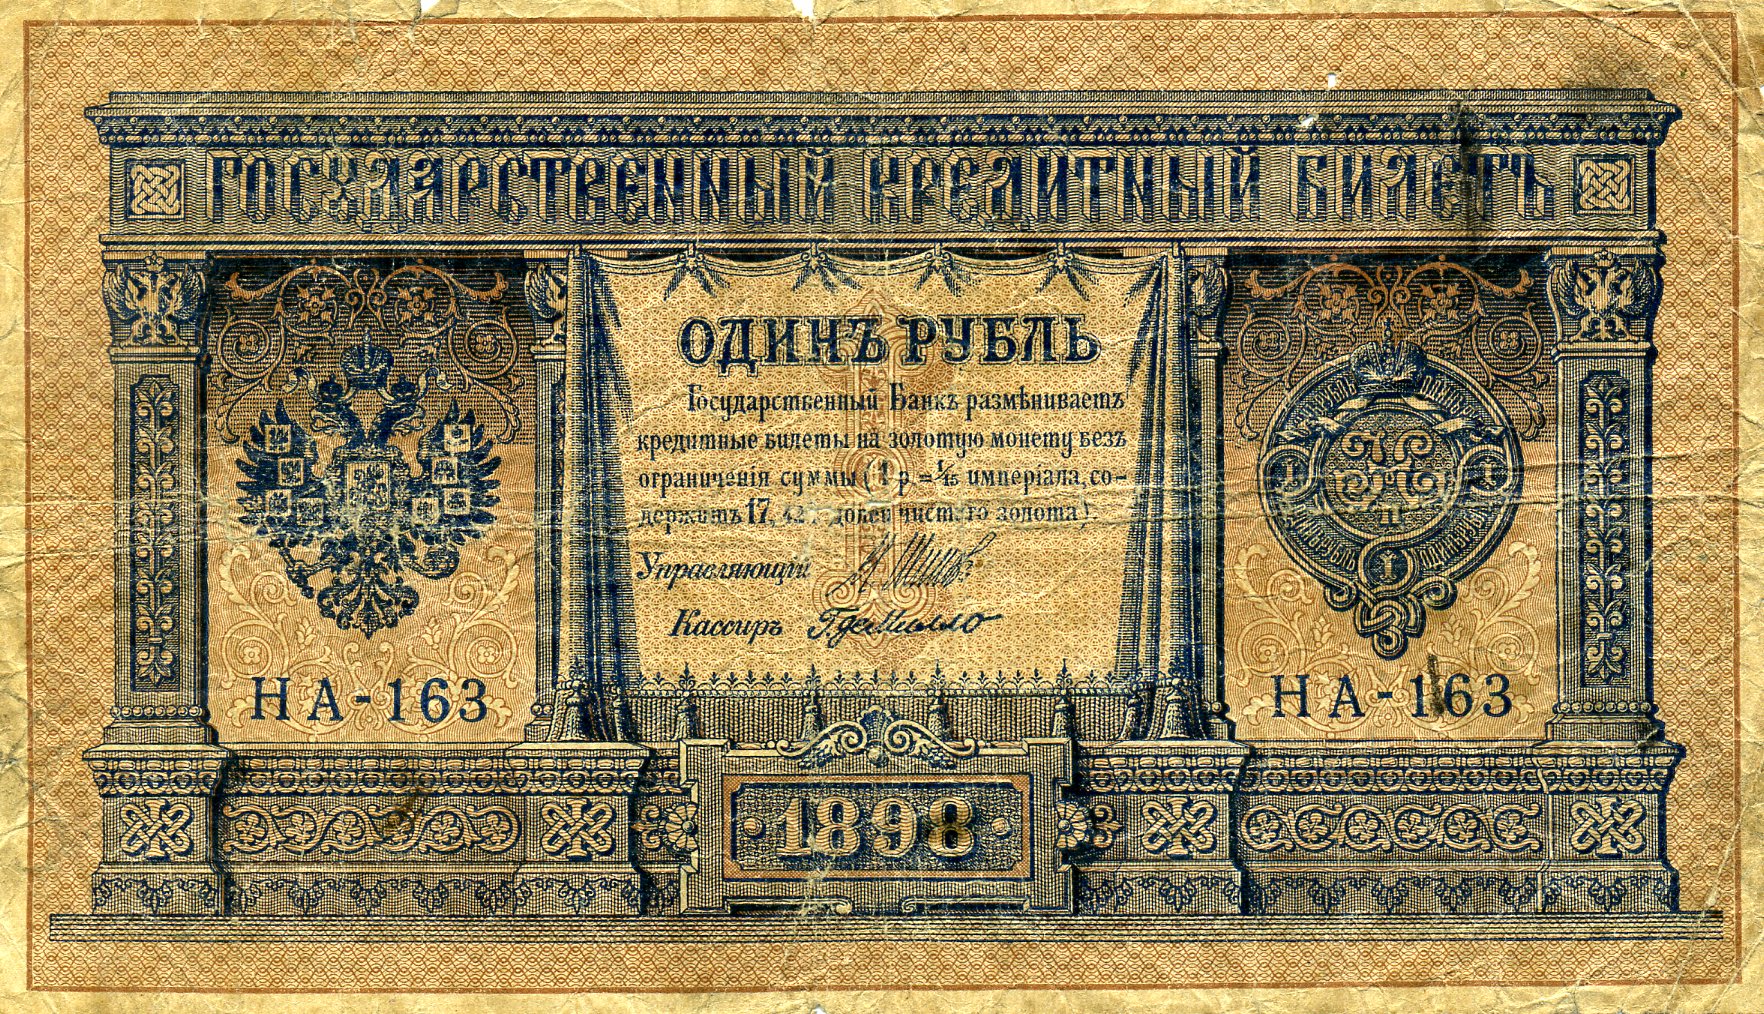 1 рубль 1898 года. Аверс. Реферат Рефератович.